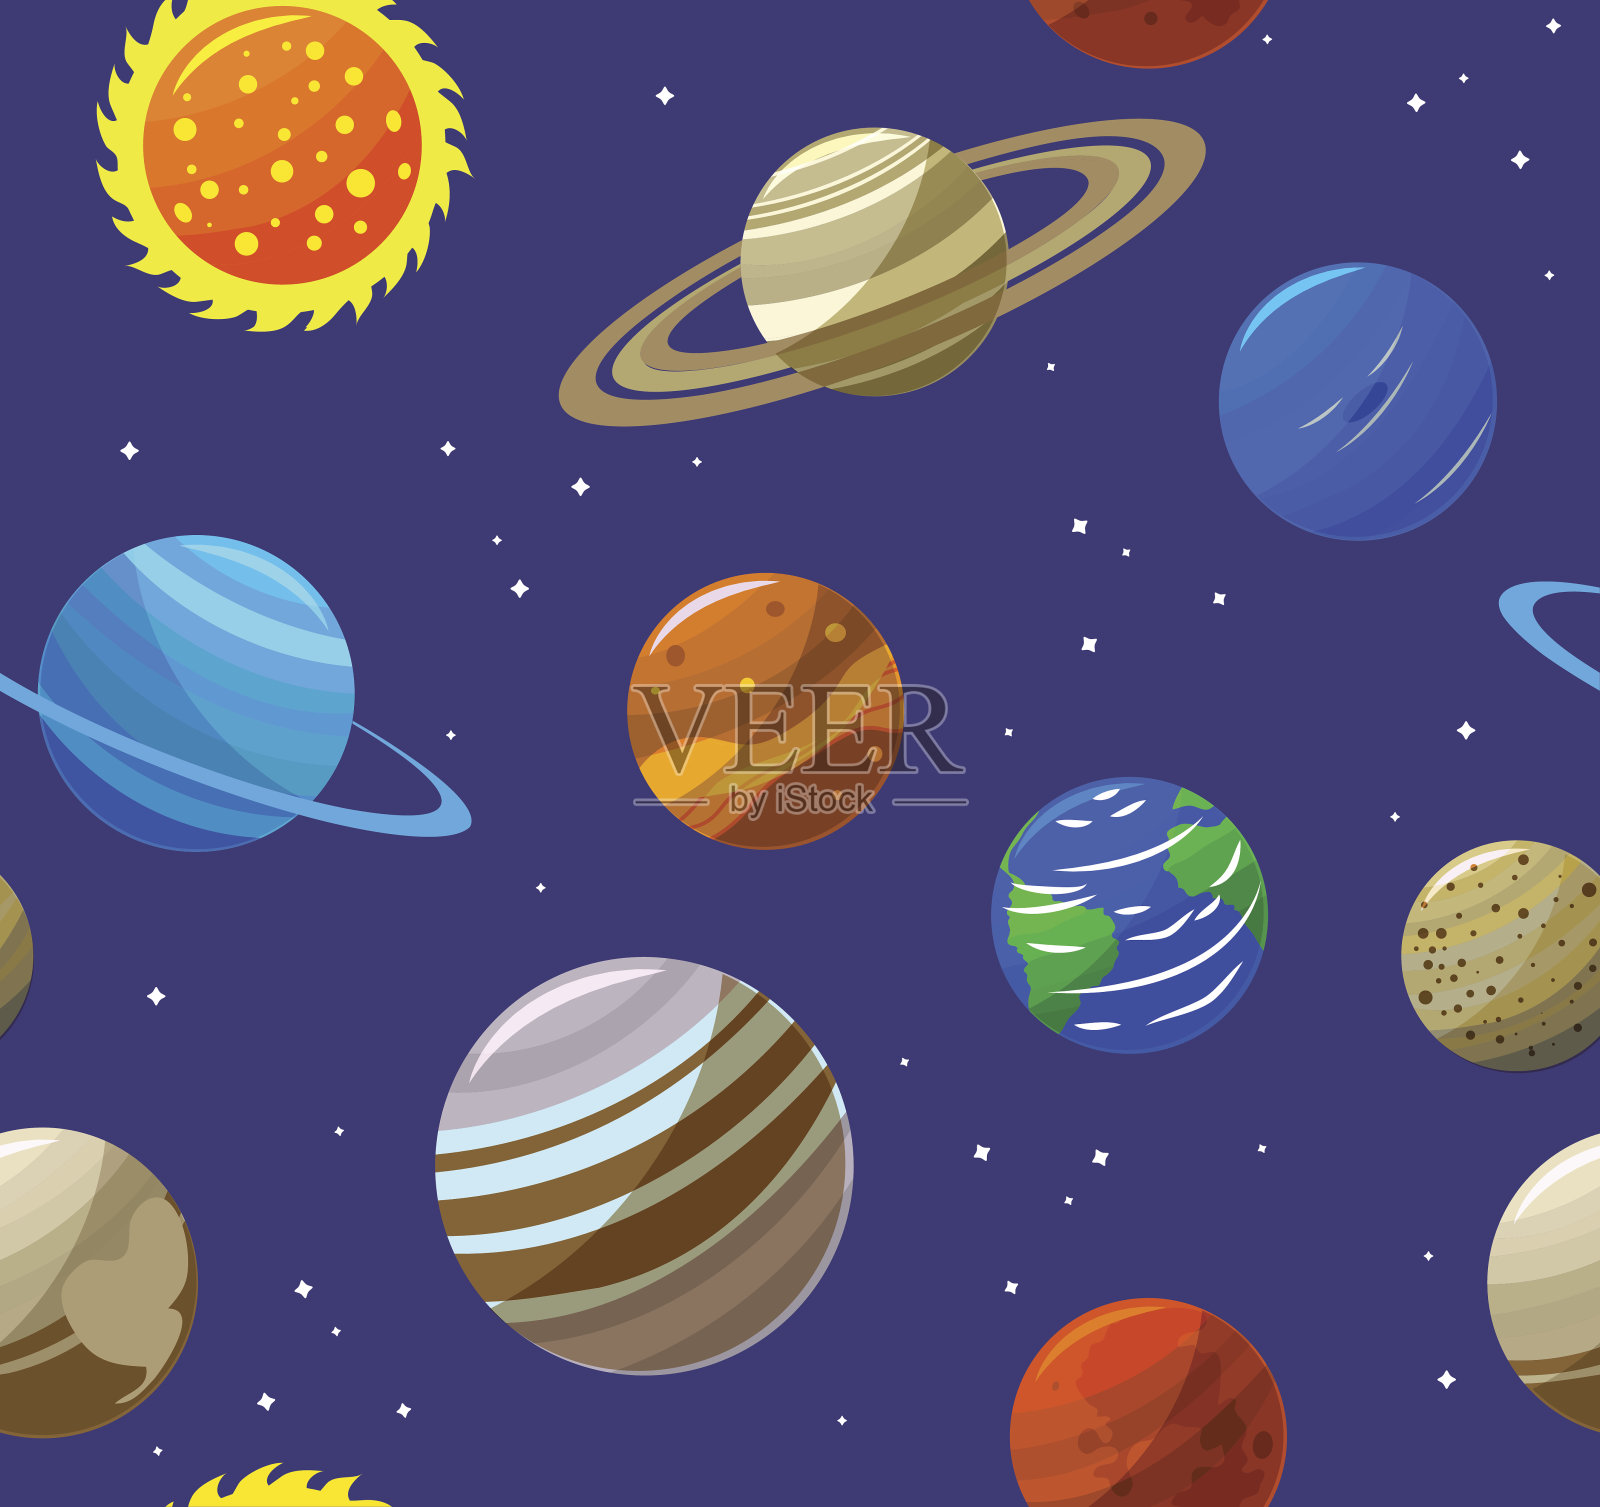 太阳系行星和太阳的背景图案。向量插画图片素材